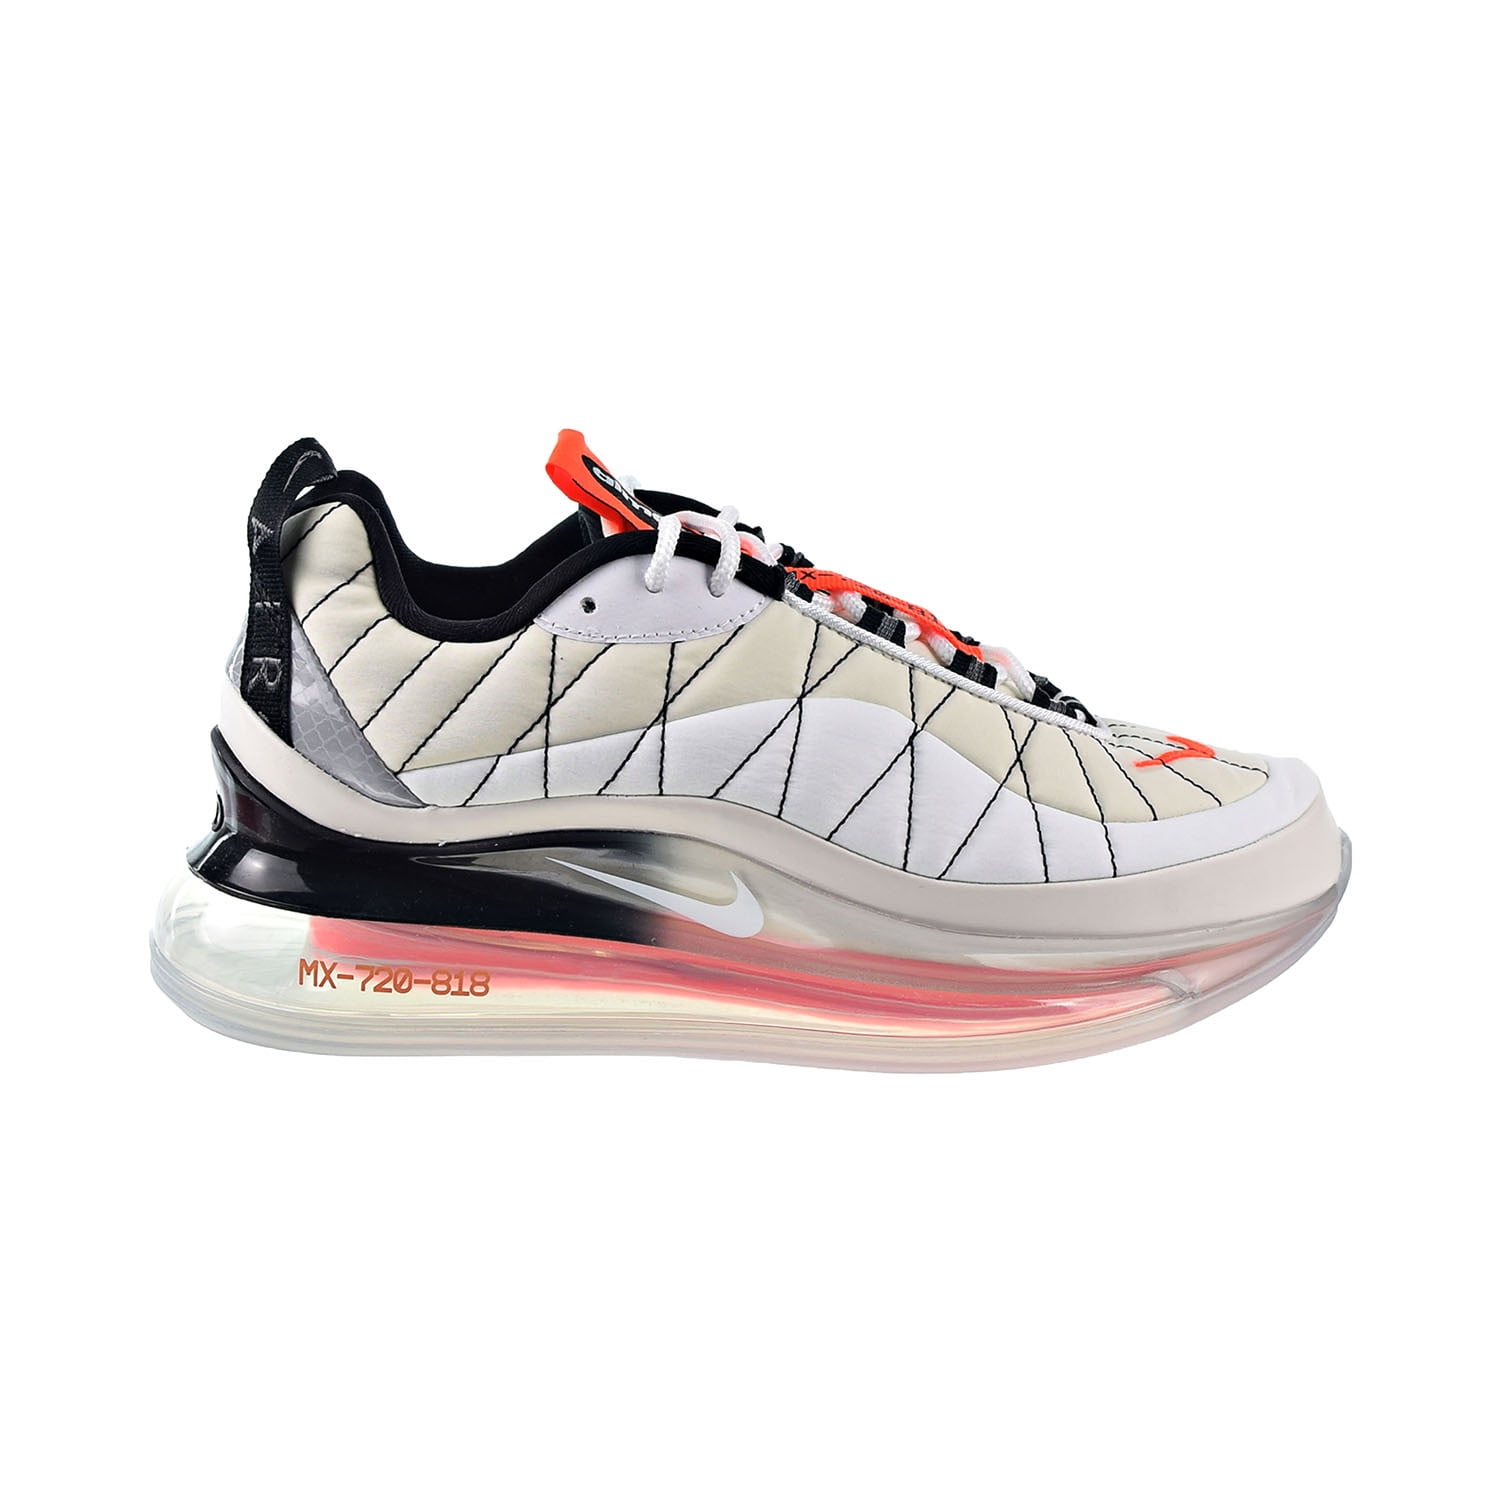 Nike MX 720-818 Women's Shoes Sail-White-Black-Hyper Orange ci3869-100 -